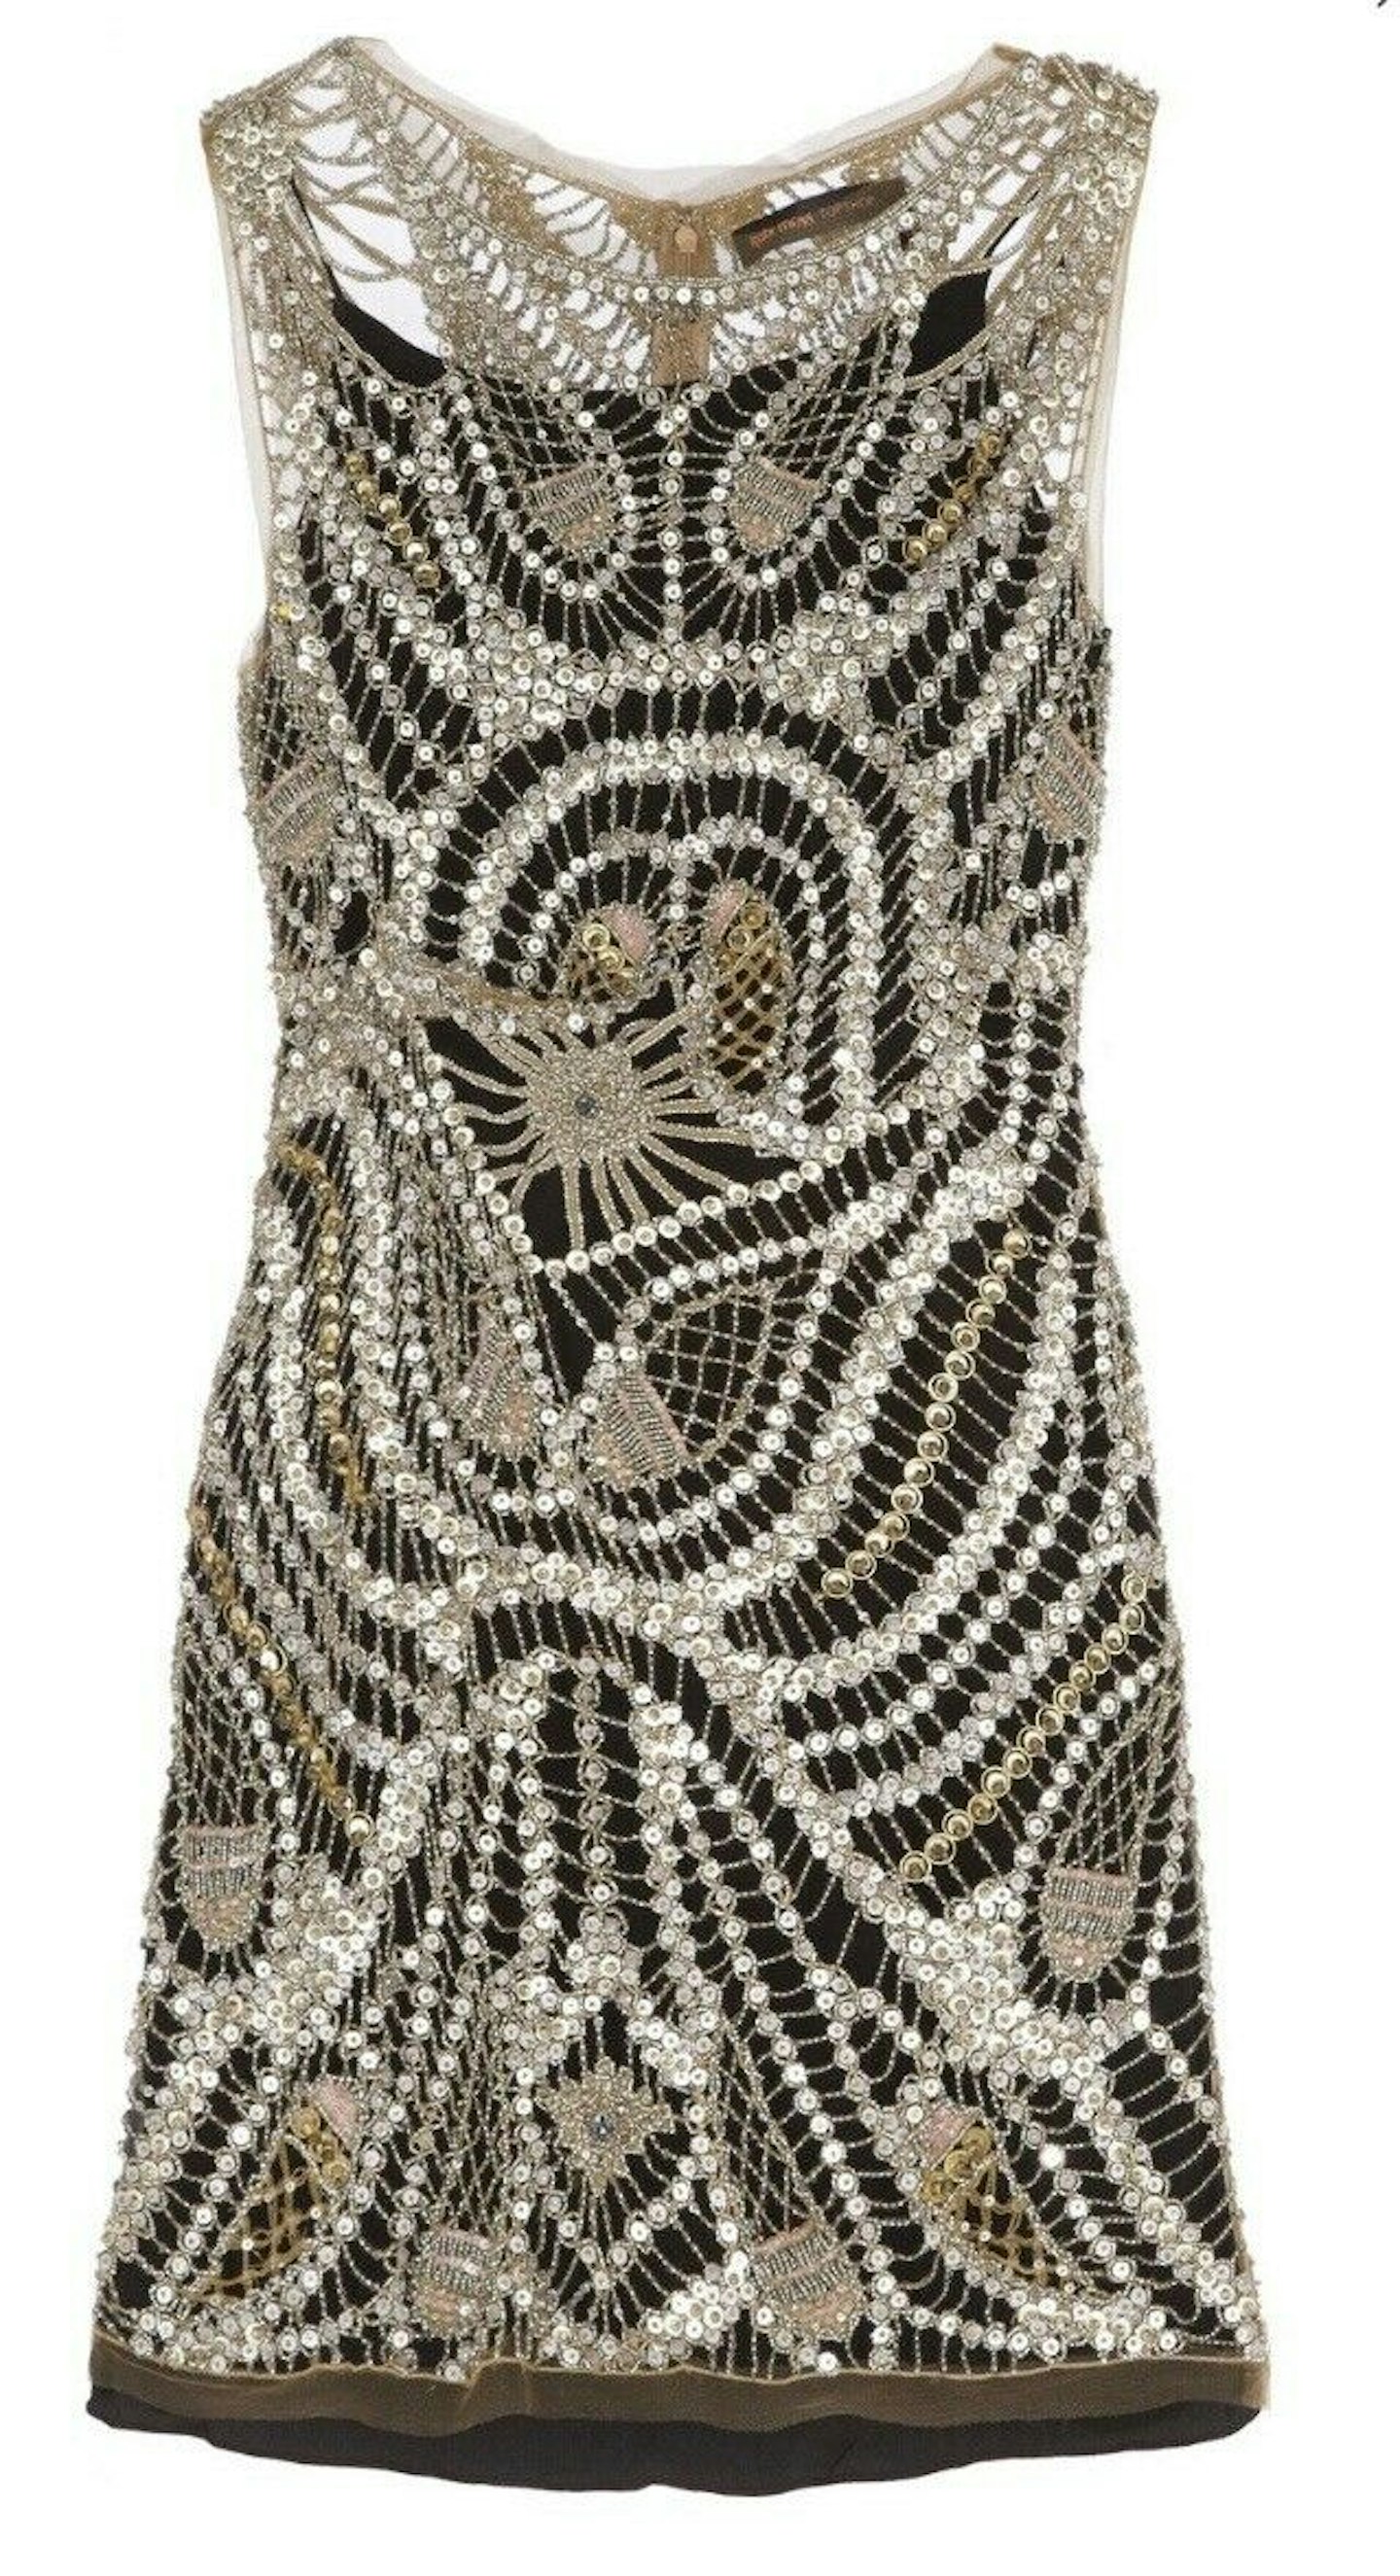 Cobweb Beaded Dress, £500